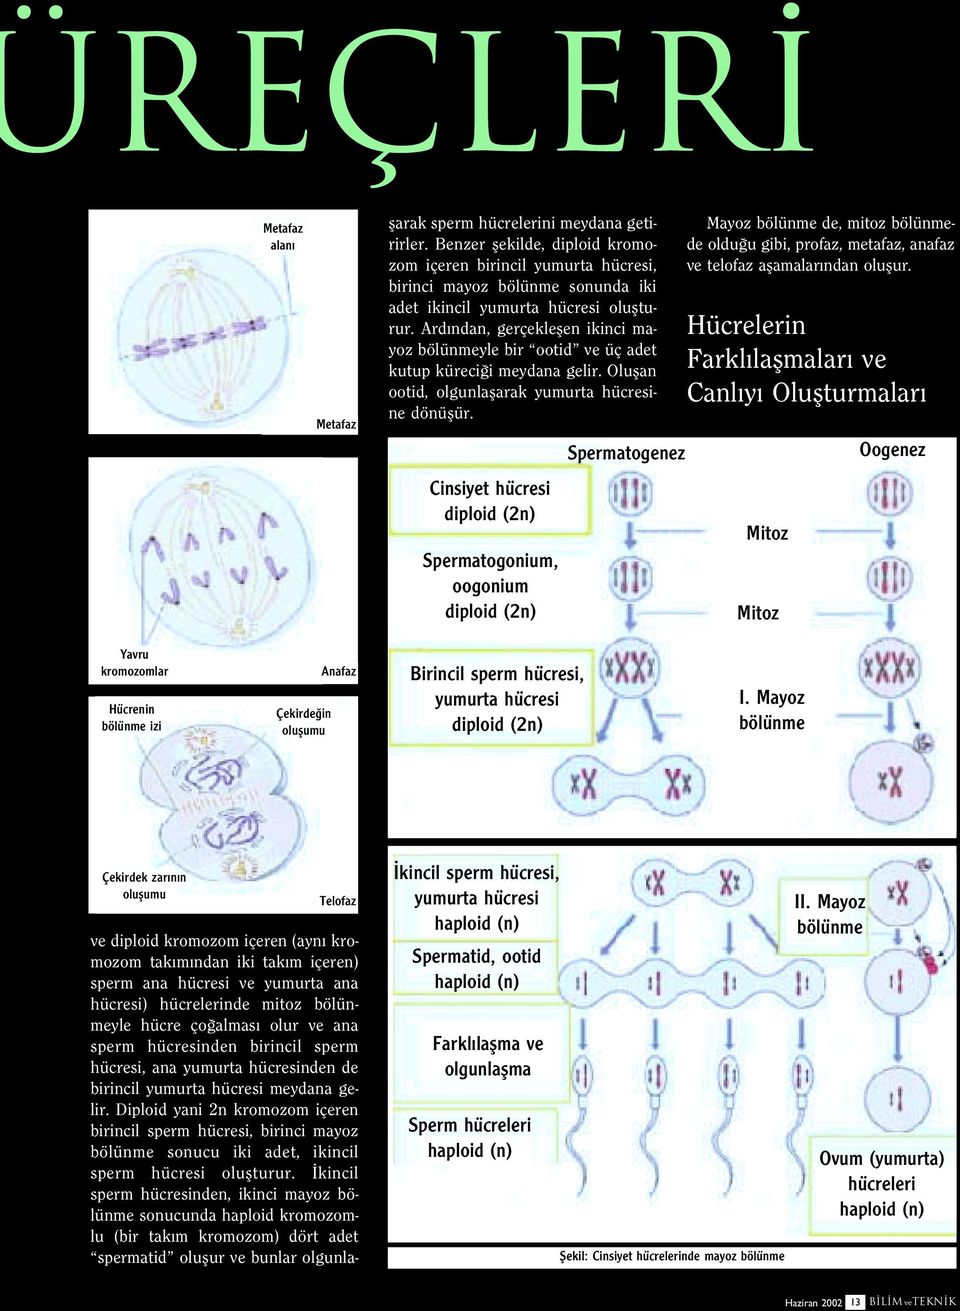 Diploid yani 2n kromozom içeren birincil sperm hücresi, birinci mayoz bölünme sonucu iki adet, ikincil sperm hücresi oluflturur.